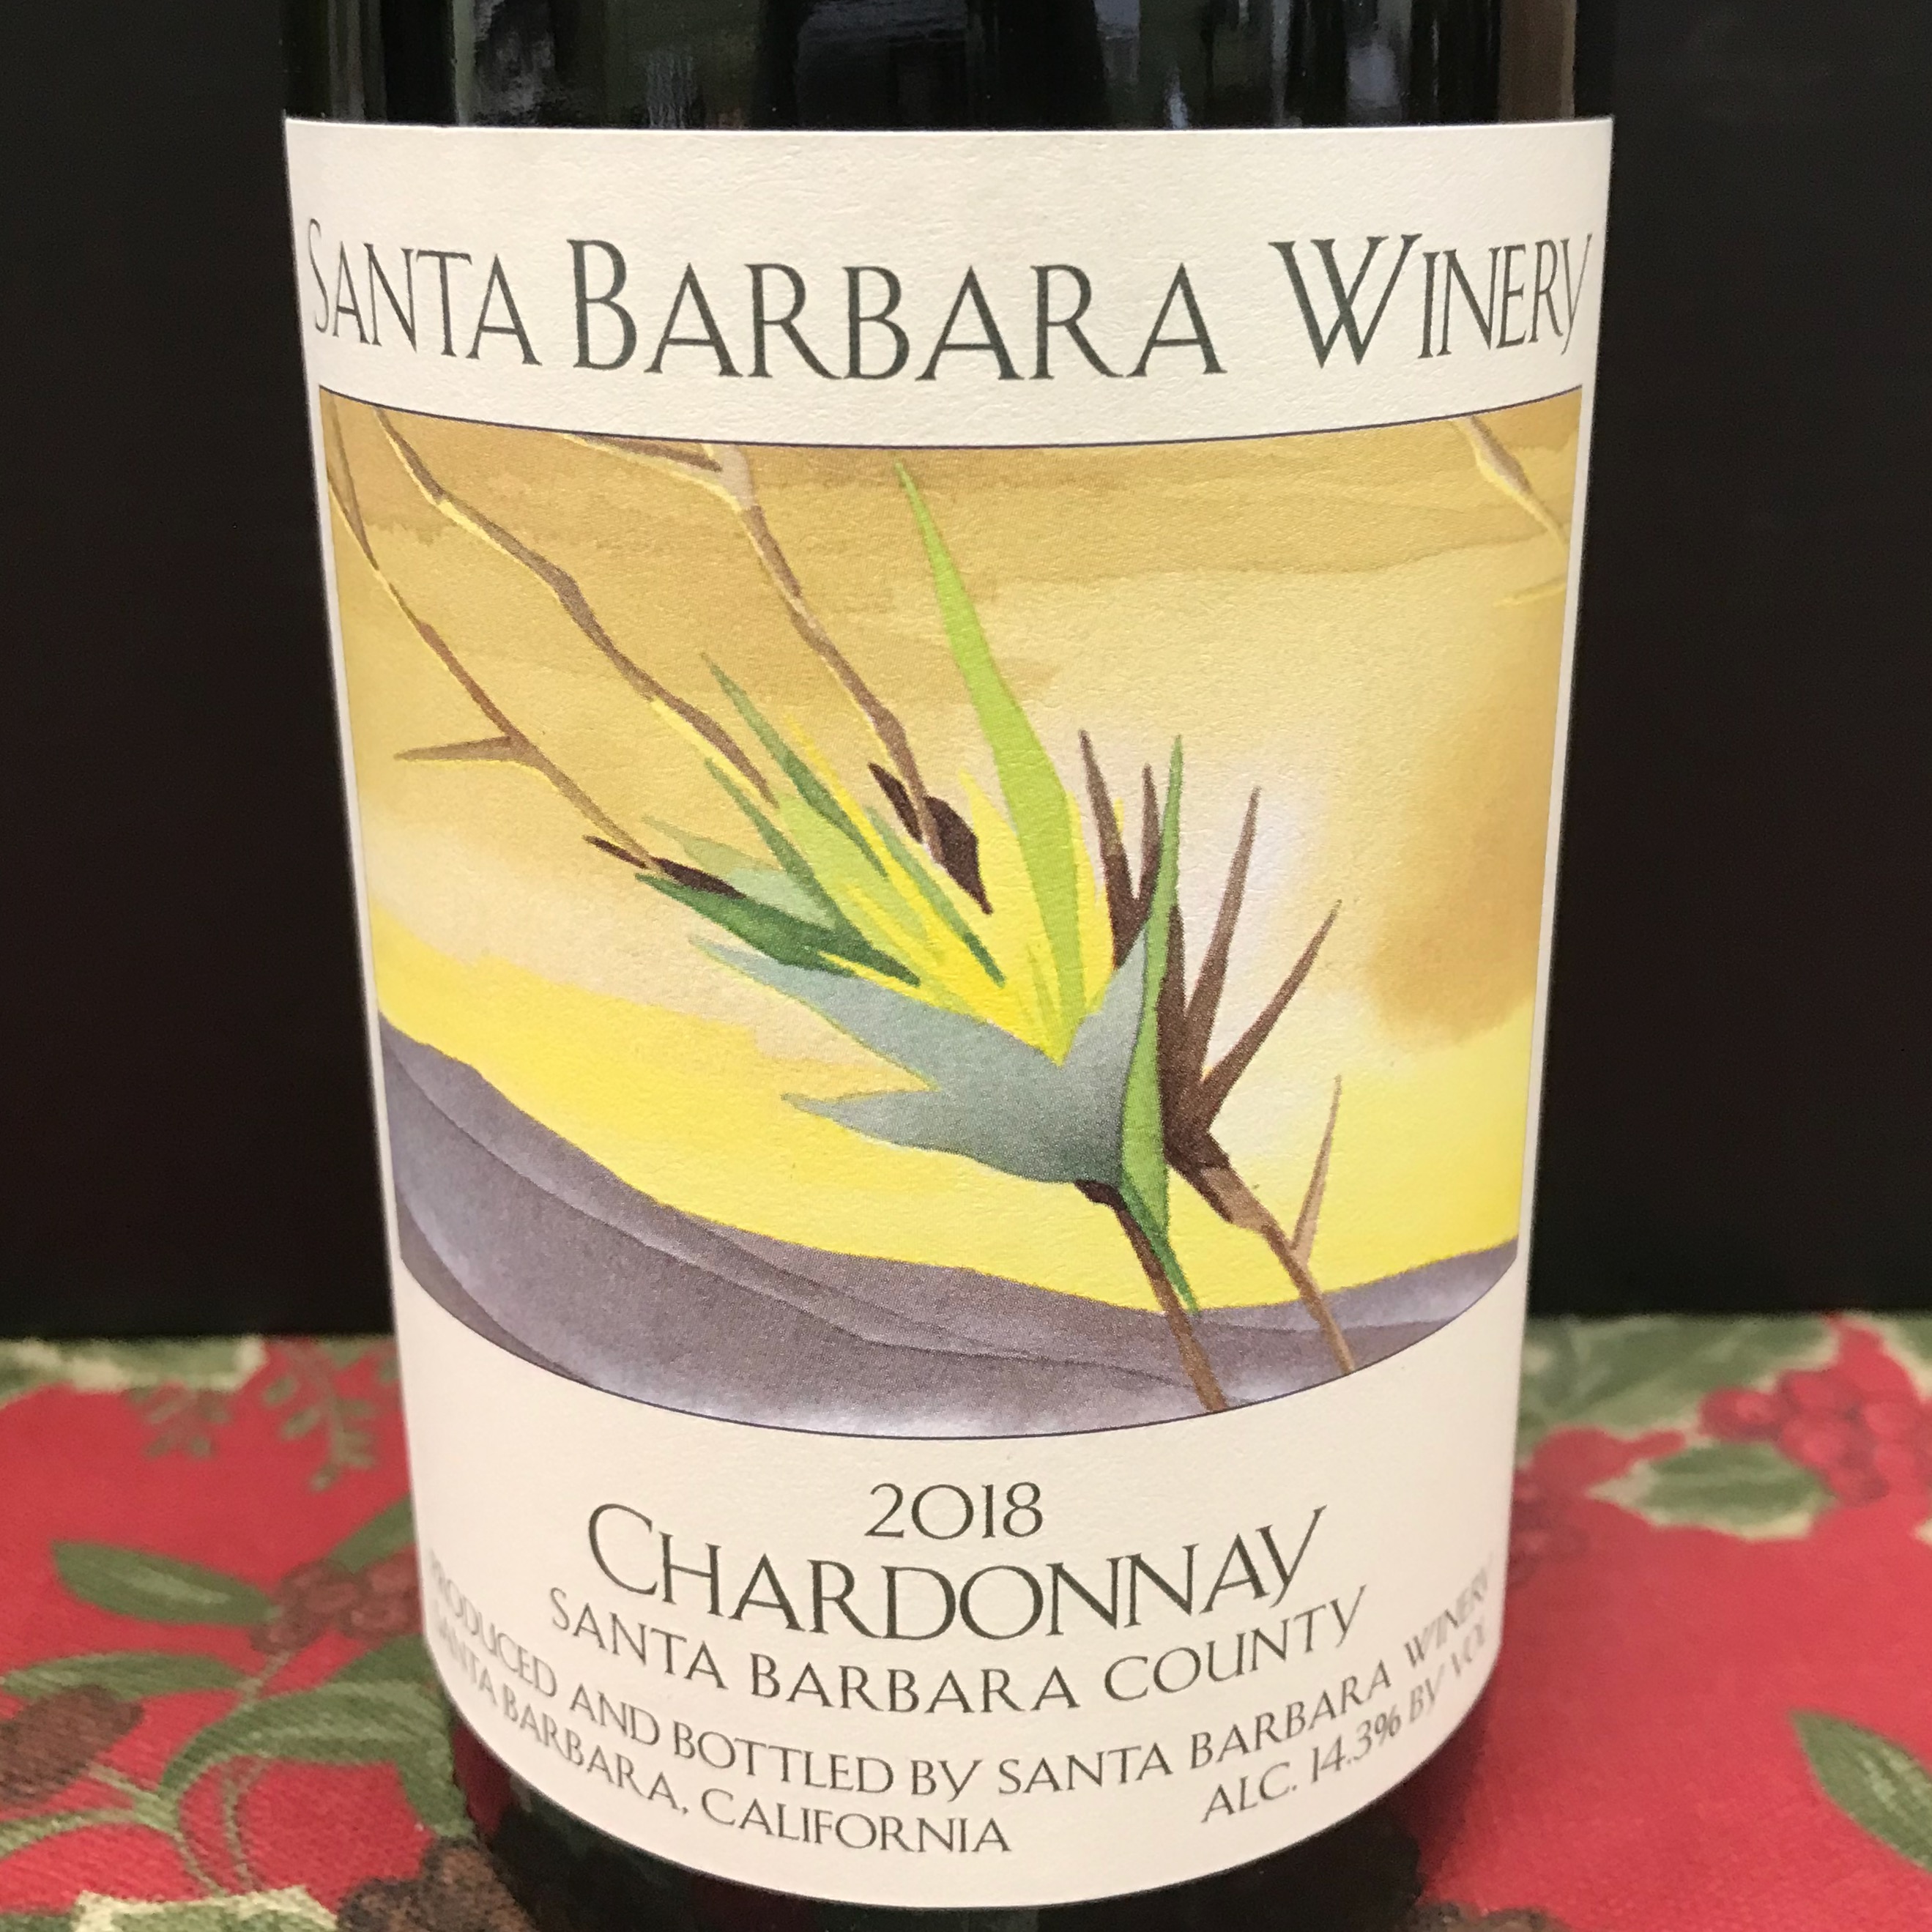 Santa Barbara Santa Barbara County Chardonnay 2018